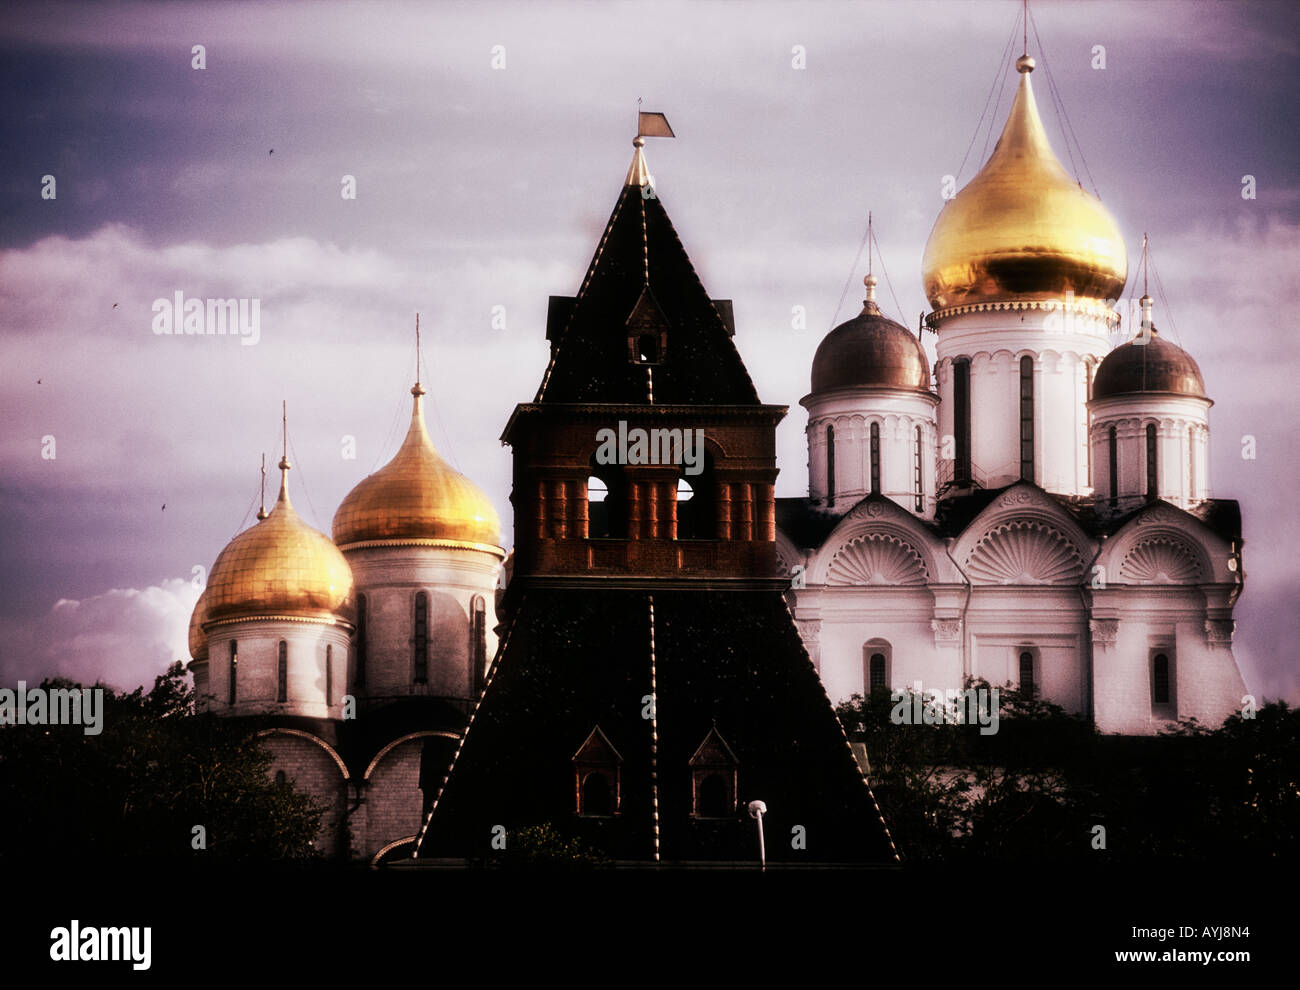 Dôme couleur or à Moscou Russie cathédrale coupoles Banque D'Images